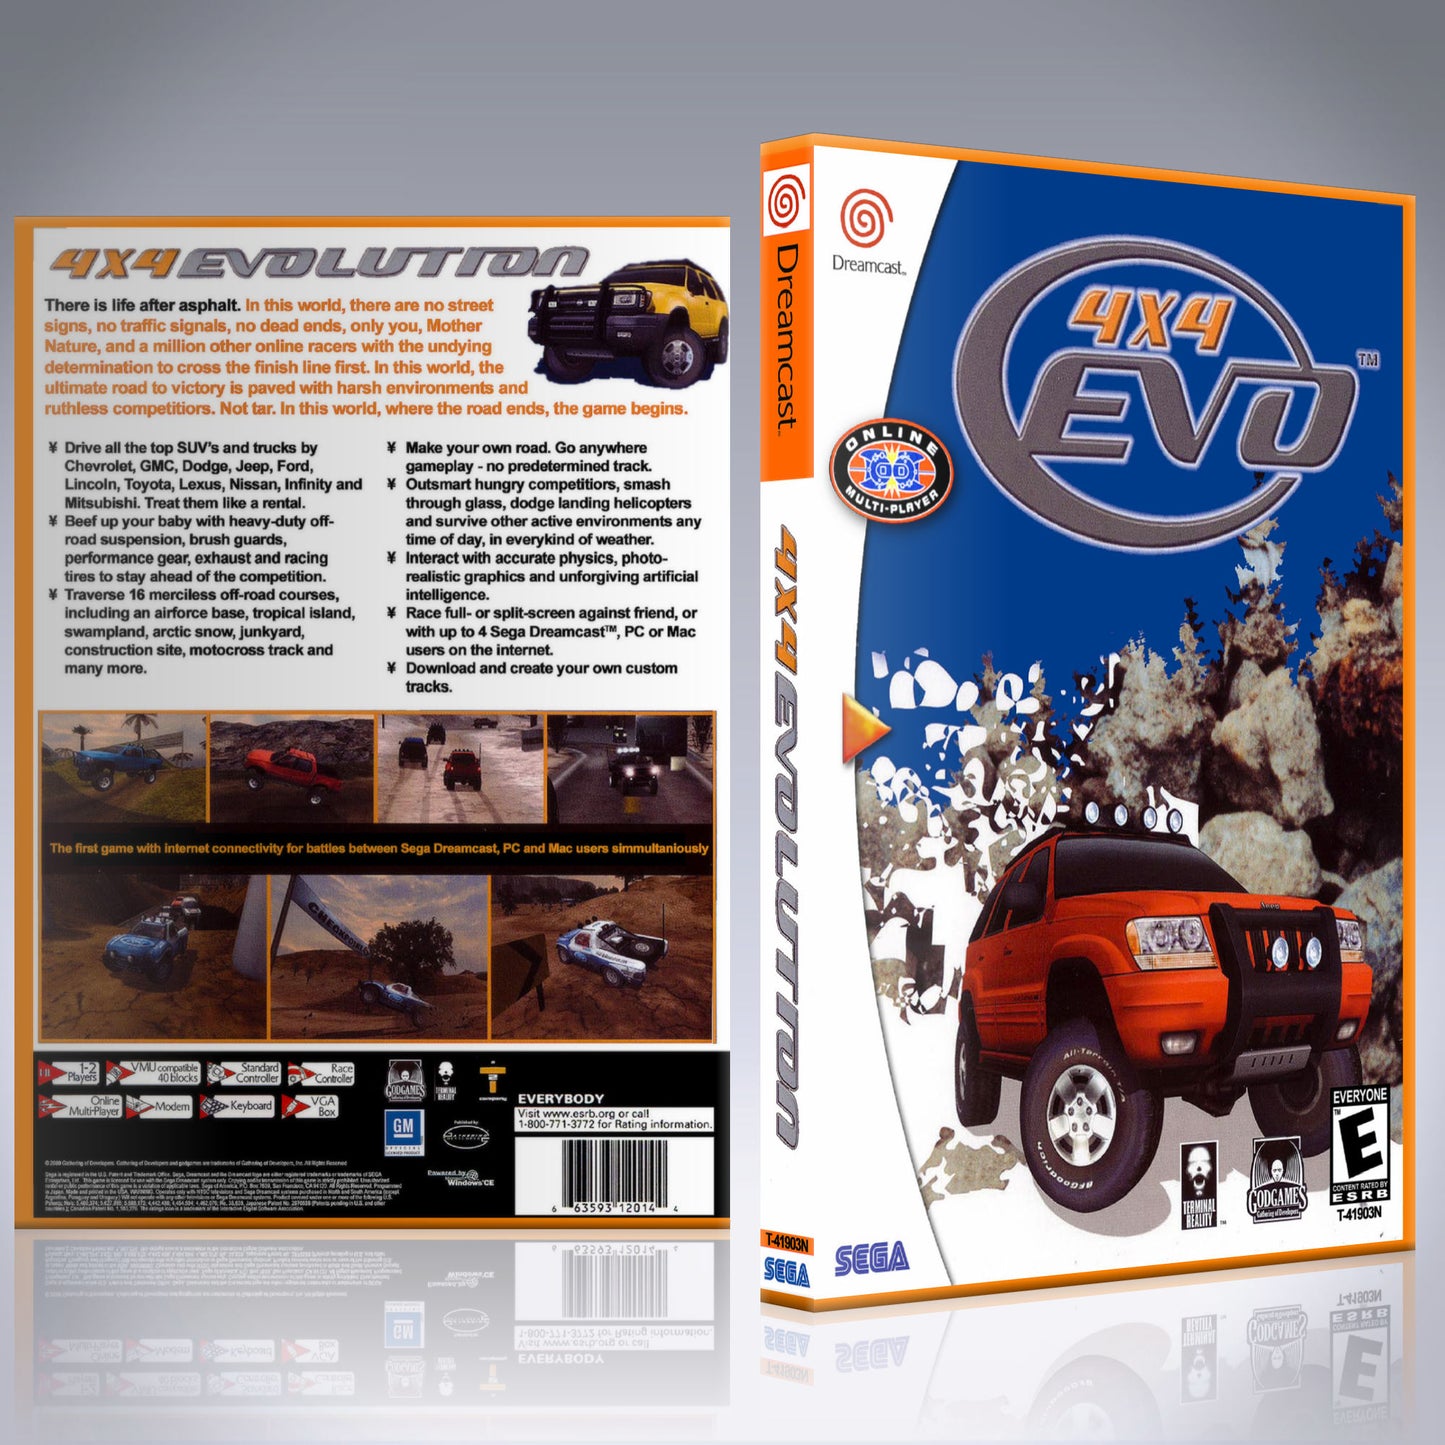 Dreamcast Custom Case - NO GAME - 4 x 4 Evo